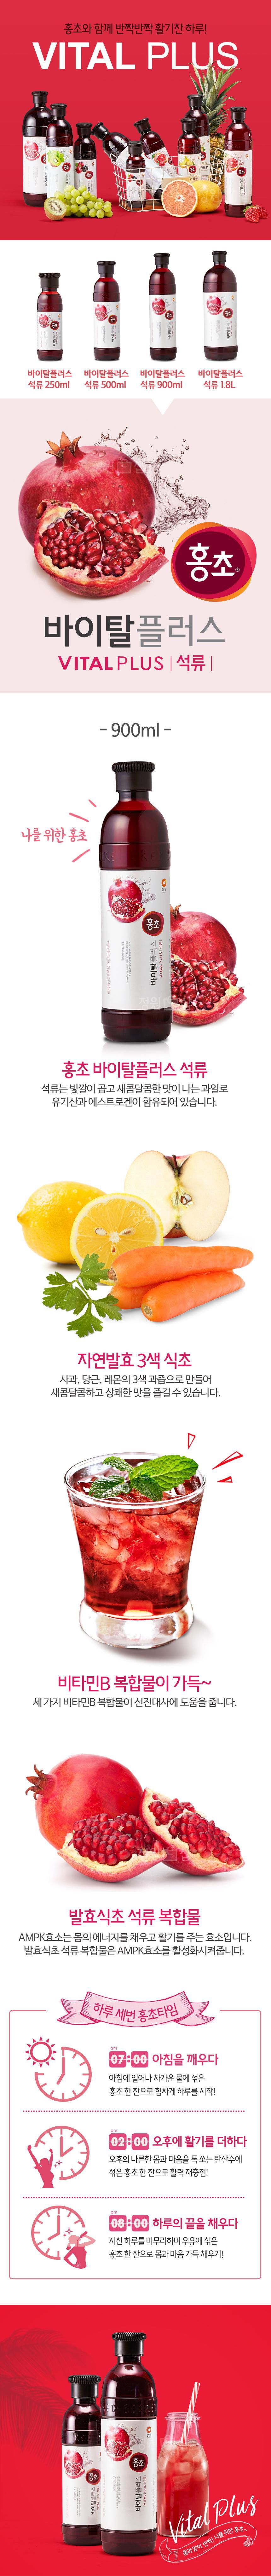 韓國食品-[청정원] 홍초[석류] 900ml